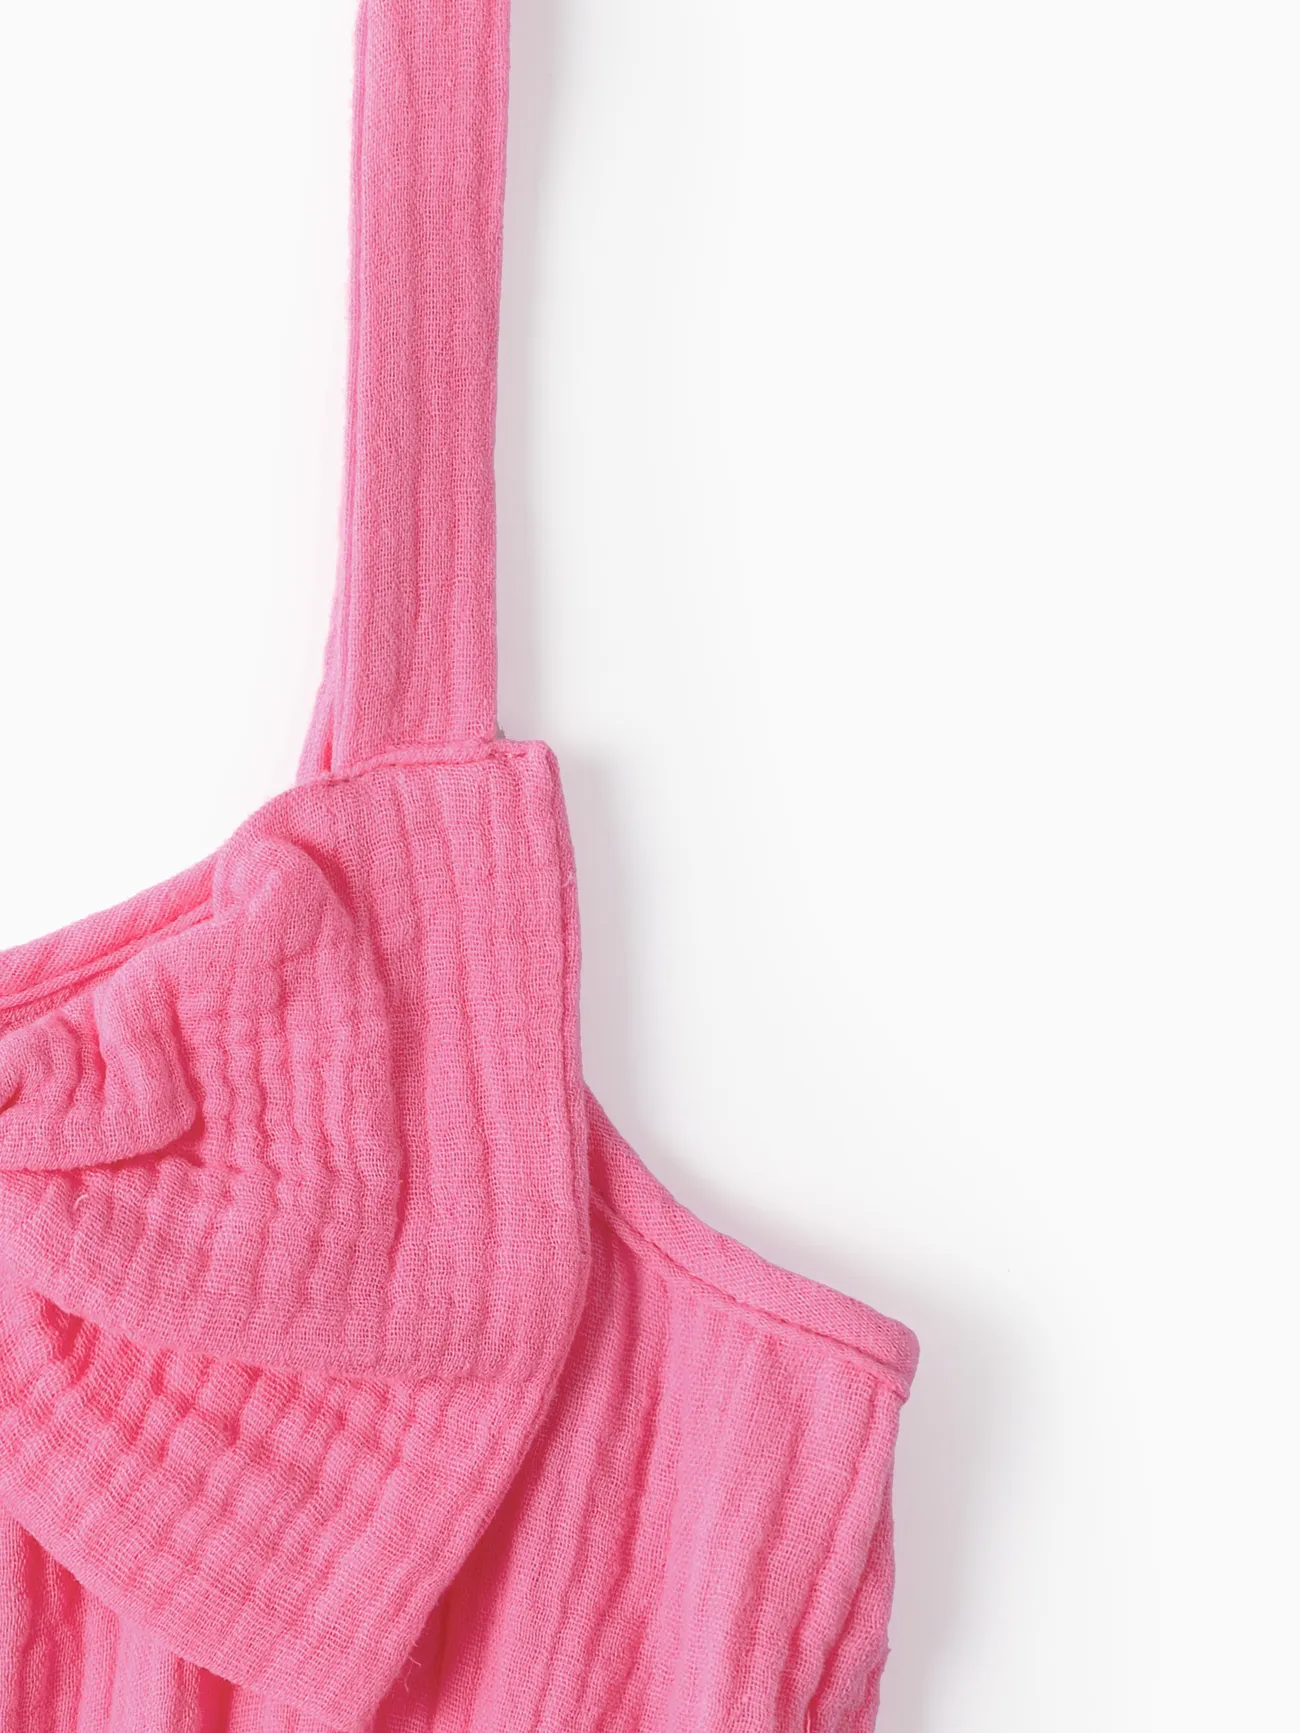 Toddler Girls Sweet Hanging Strap Design Pink Cotton Romper Pink big image 1